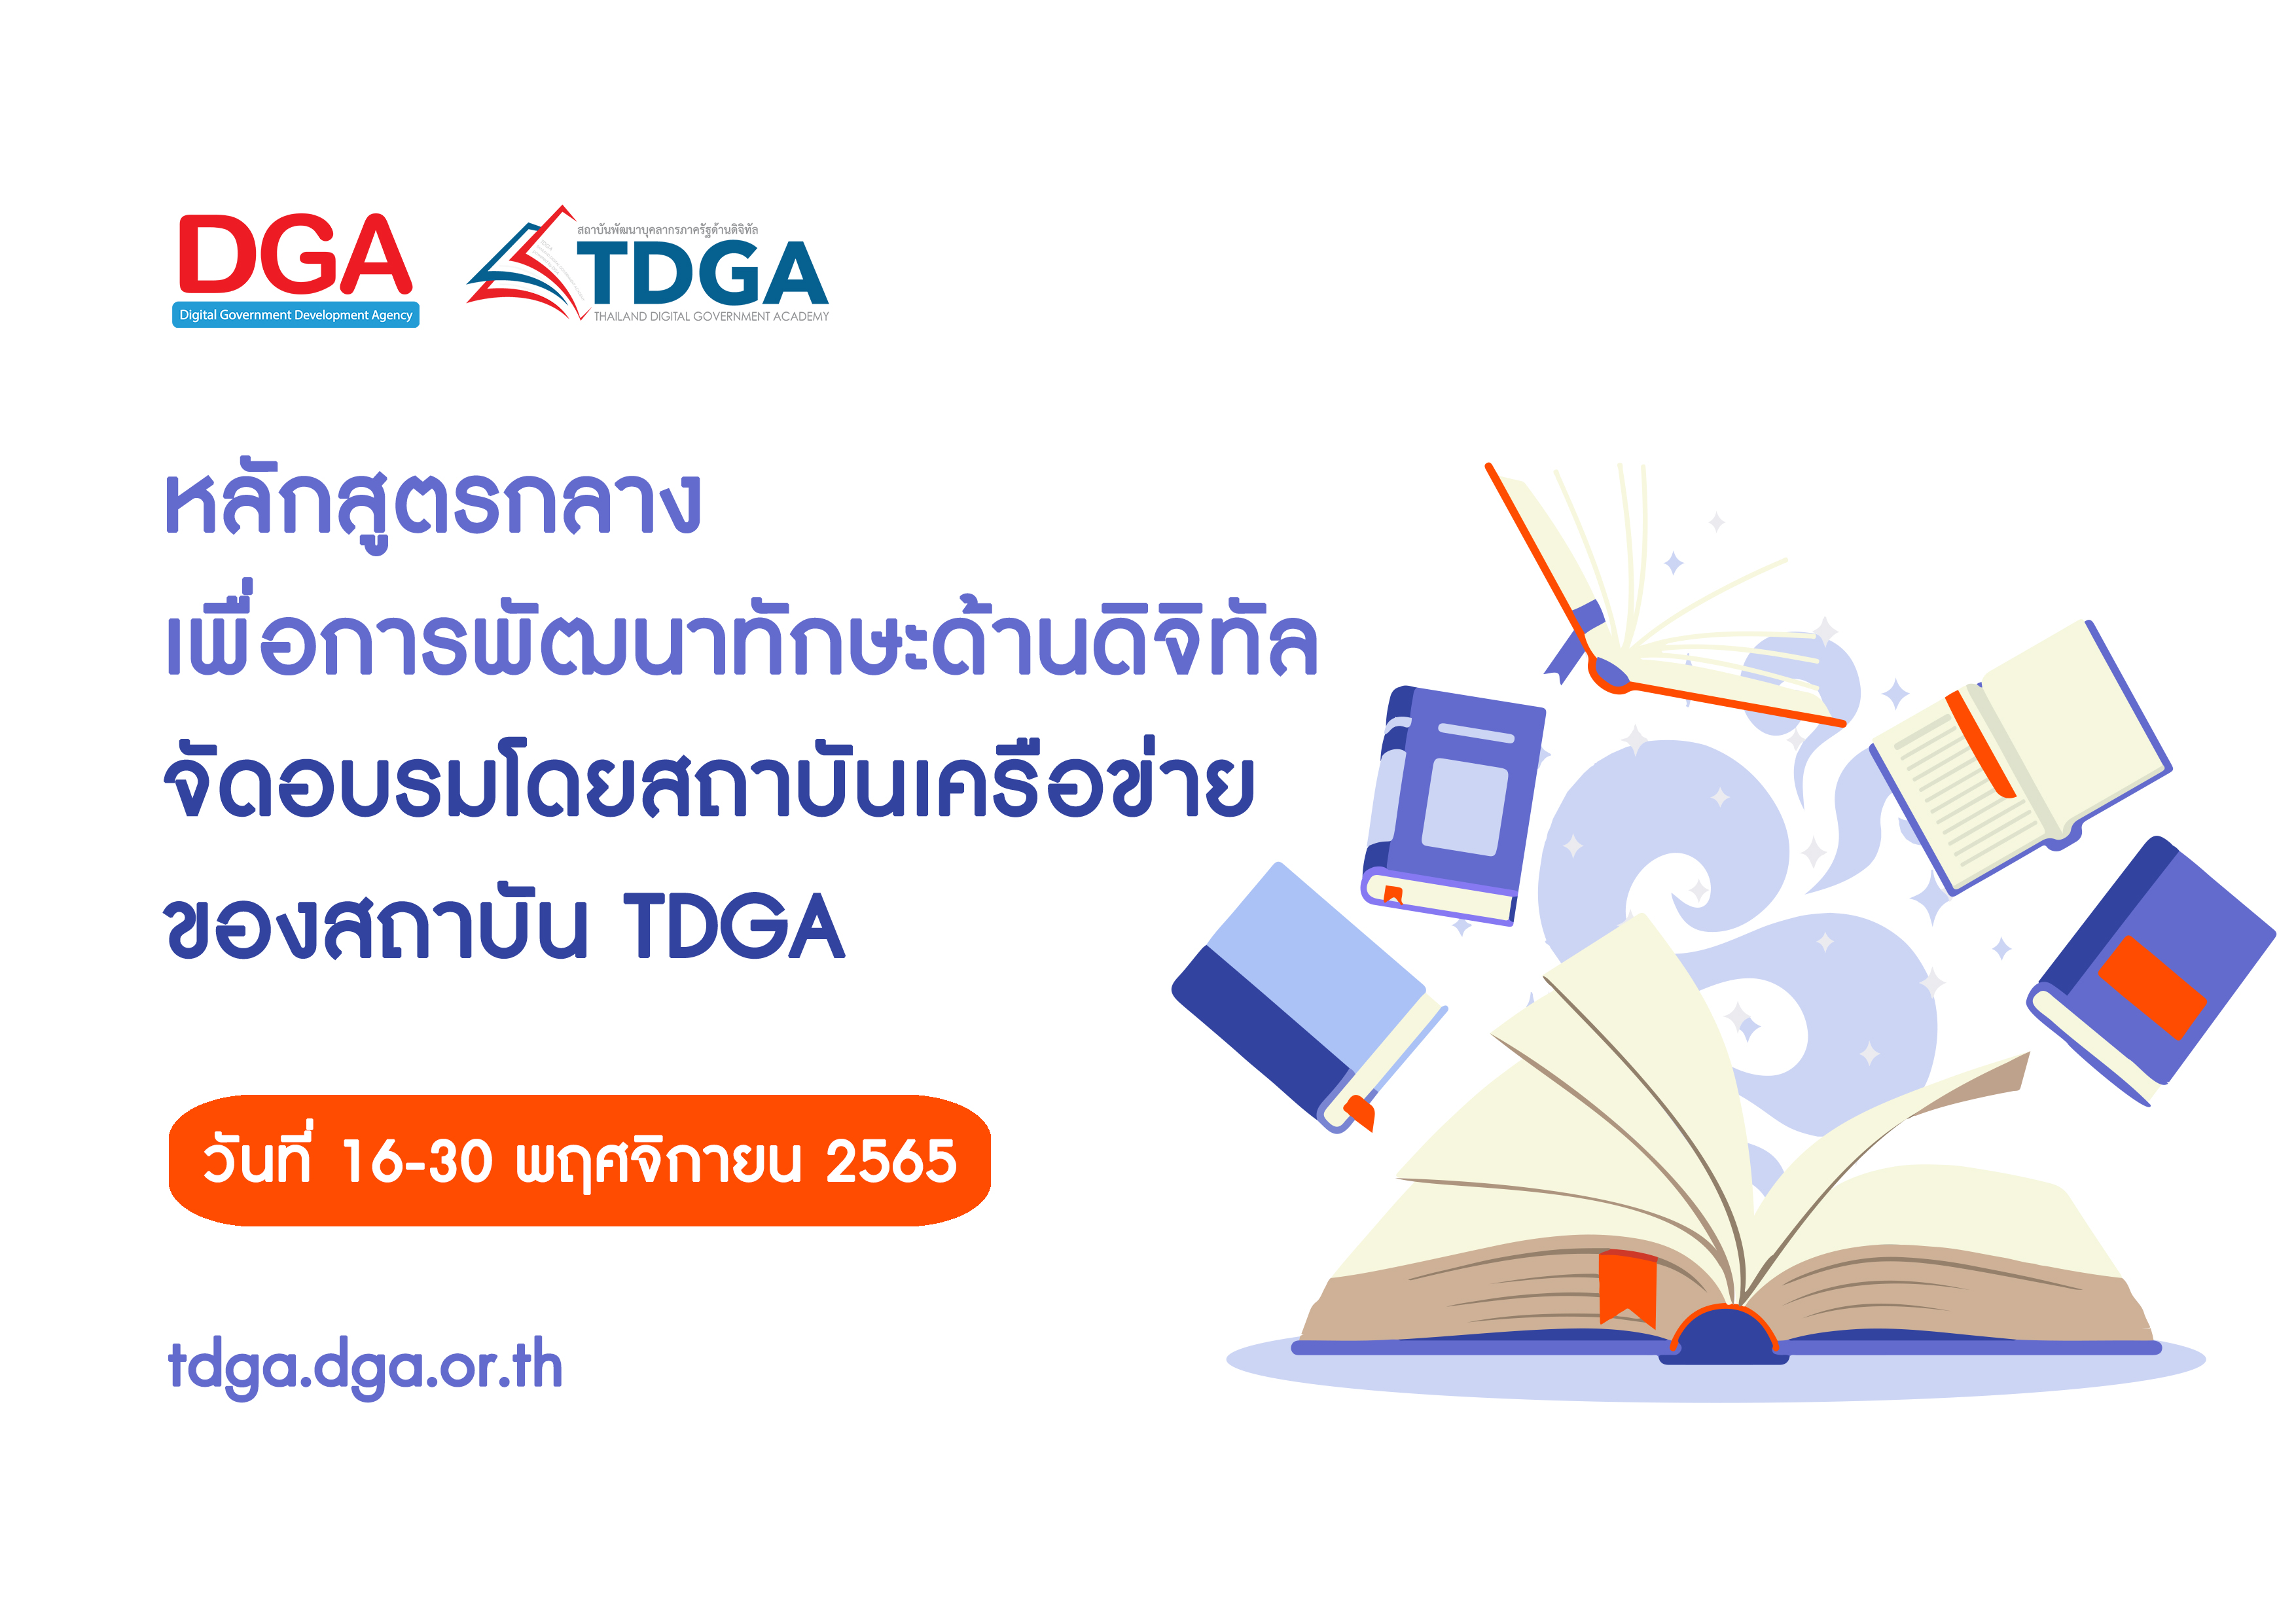 สถาบัน TDGA แนะนำหลักสูตรกลางเพื่อการพัฒนาทักษะด้านดิจิทัลฯ วันที่ 16-30 พฤศจิกายน 2565